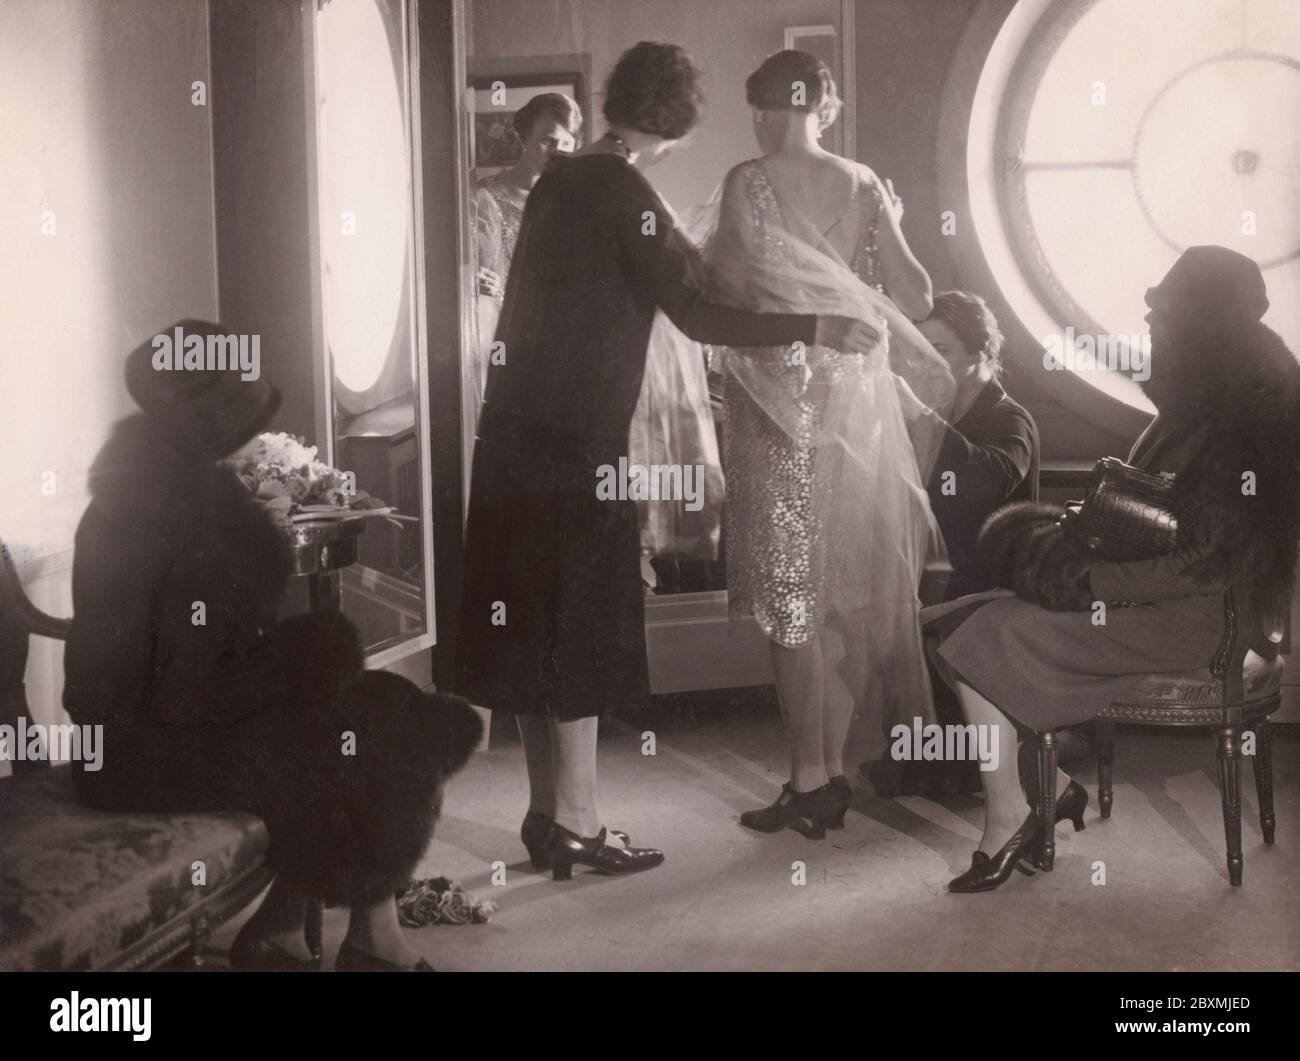 Zurück in den 1920er Jahren. Im Kaufhaus NK in Stockholm steht eine Frau vor einem Spiegel und versucht, ein Kleid anzuziehen. Zwei Frauen des Personals passen die Details an, damit sie perfekt passen. Vielleicht ein Kleid für eine Feier oder eine Party, es sind die wilden Zwanziger schließlich. Stockfoto